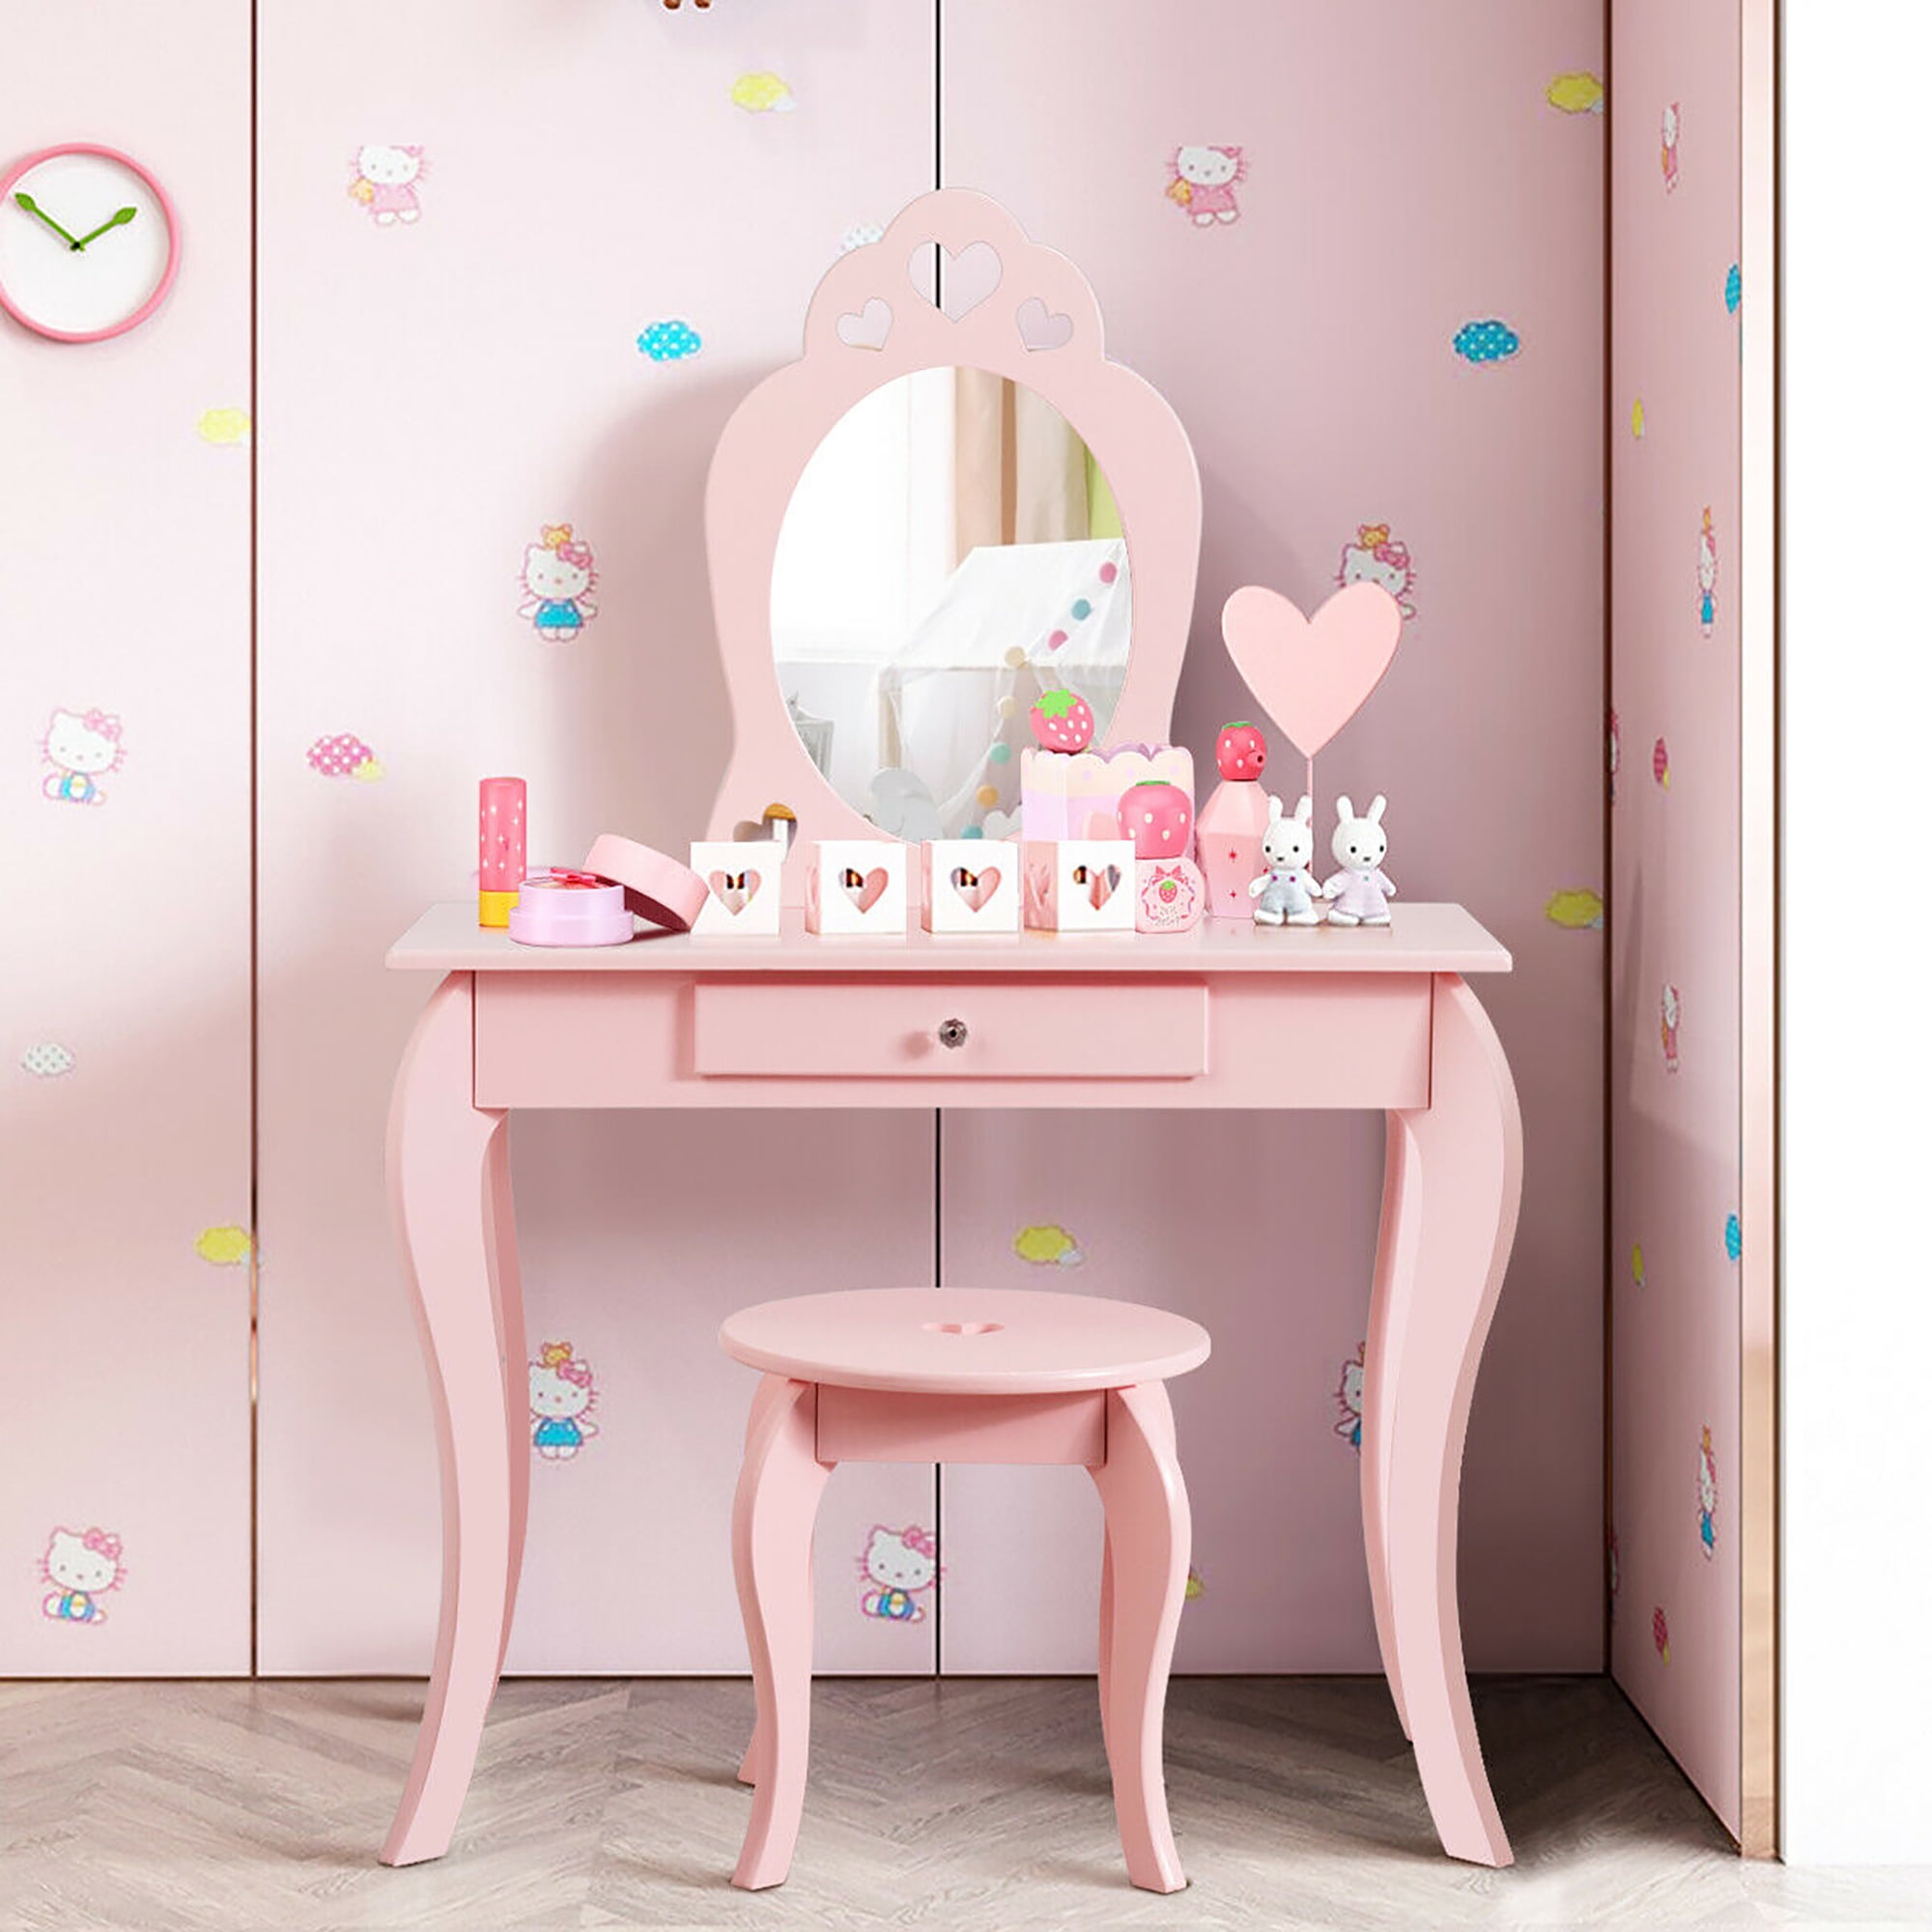 Filles rose Coiffeuse avec miroir et tabouret commode en bois pour les enfants tiroirs de meubles pour enfants et tabourets pour les enfants,Pink